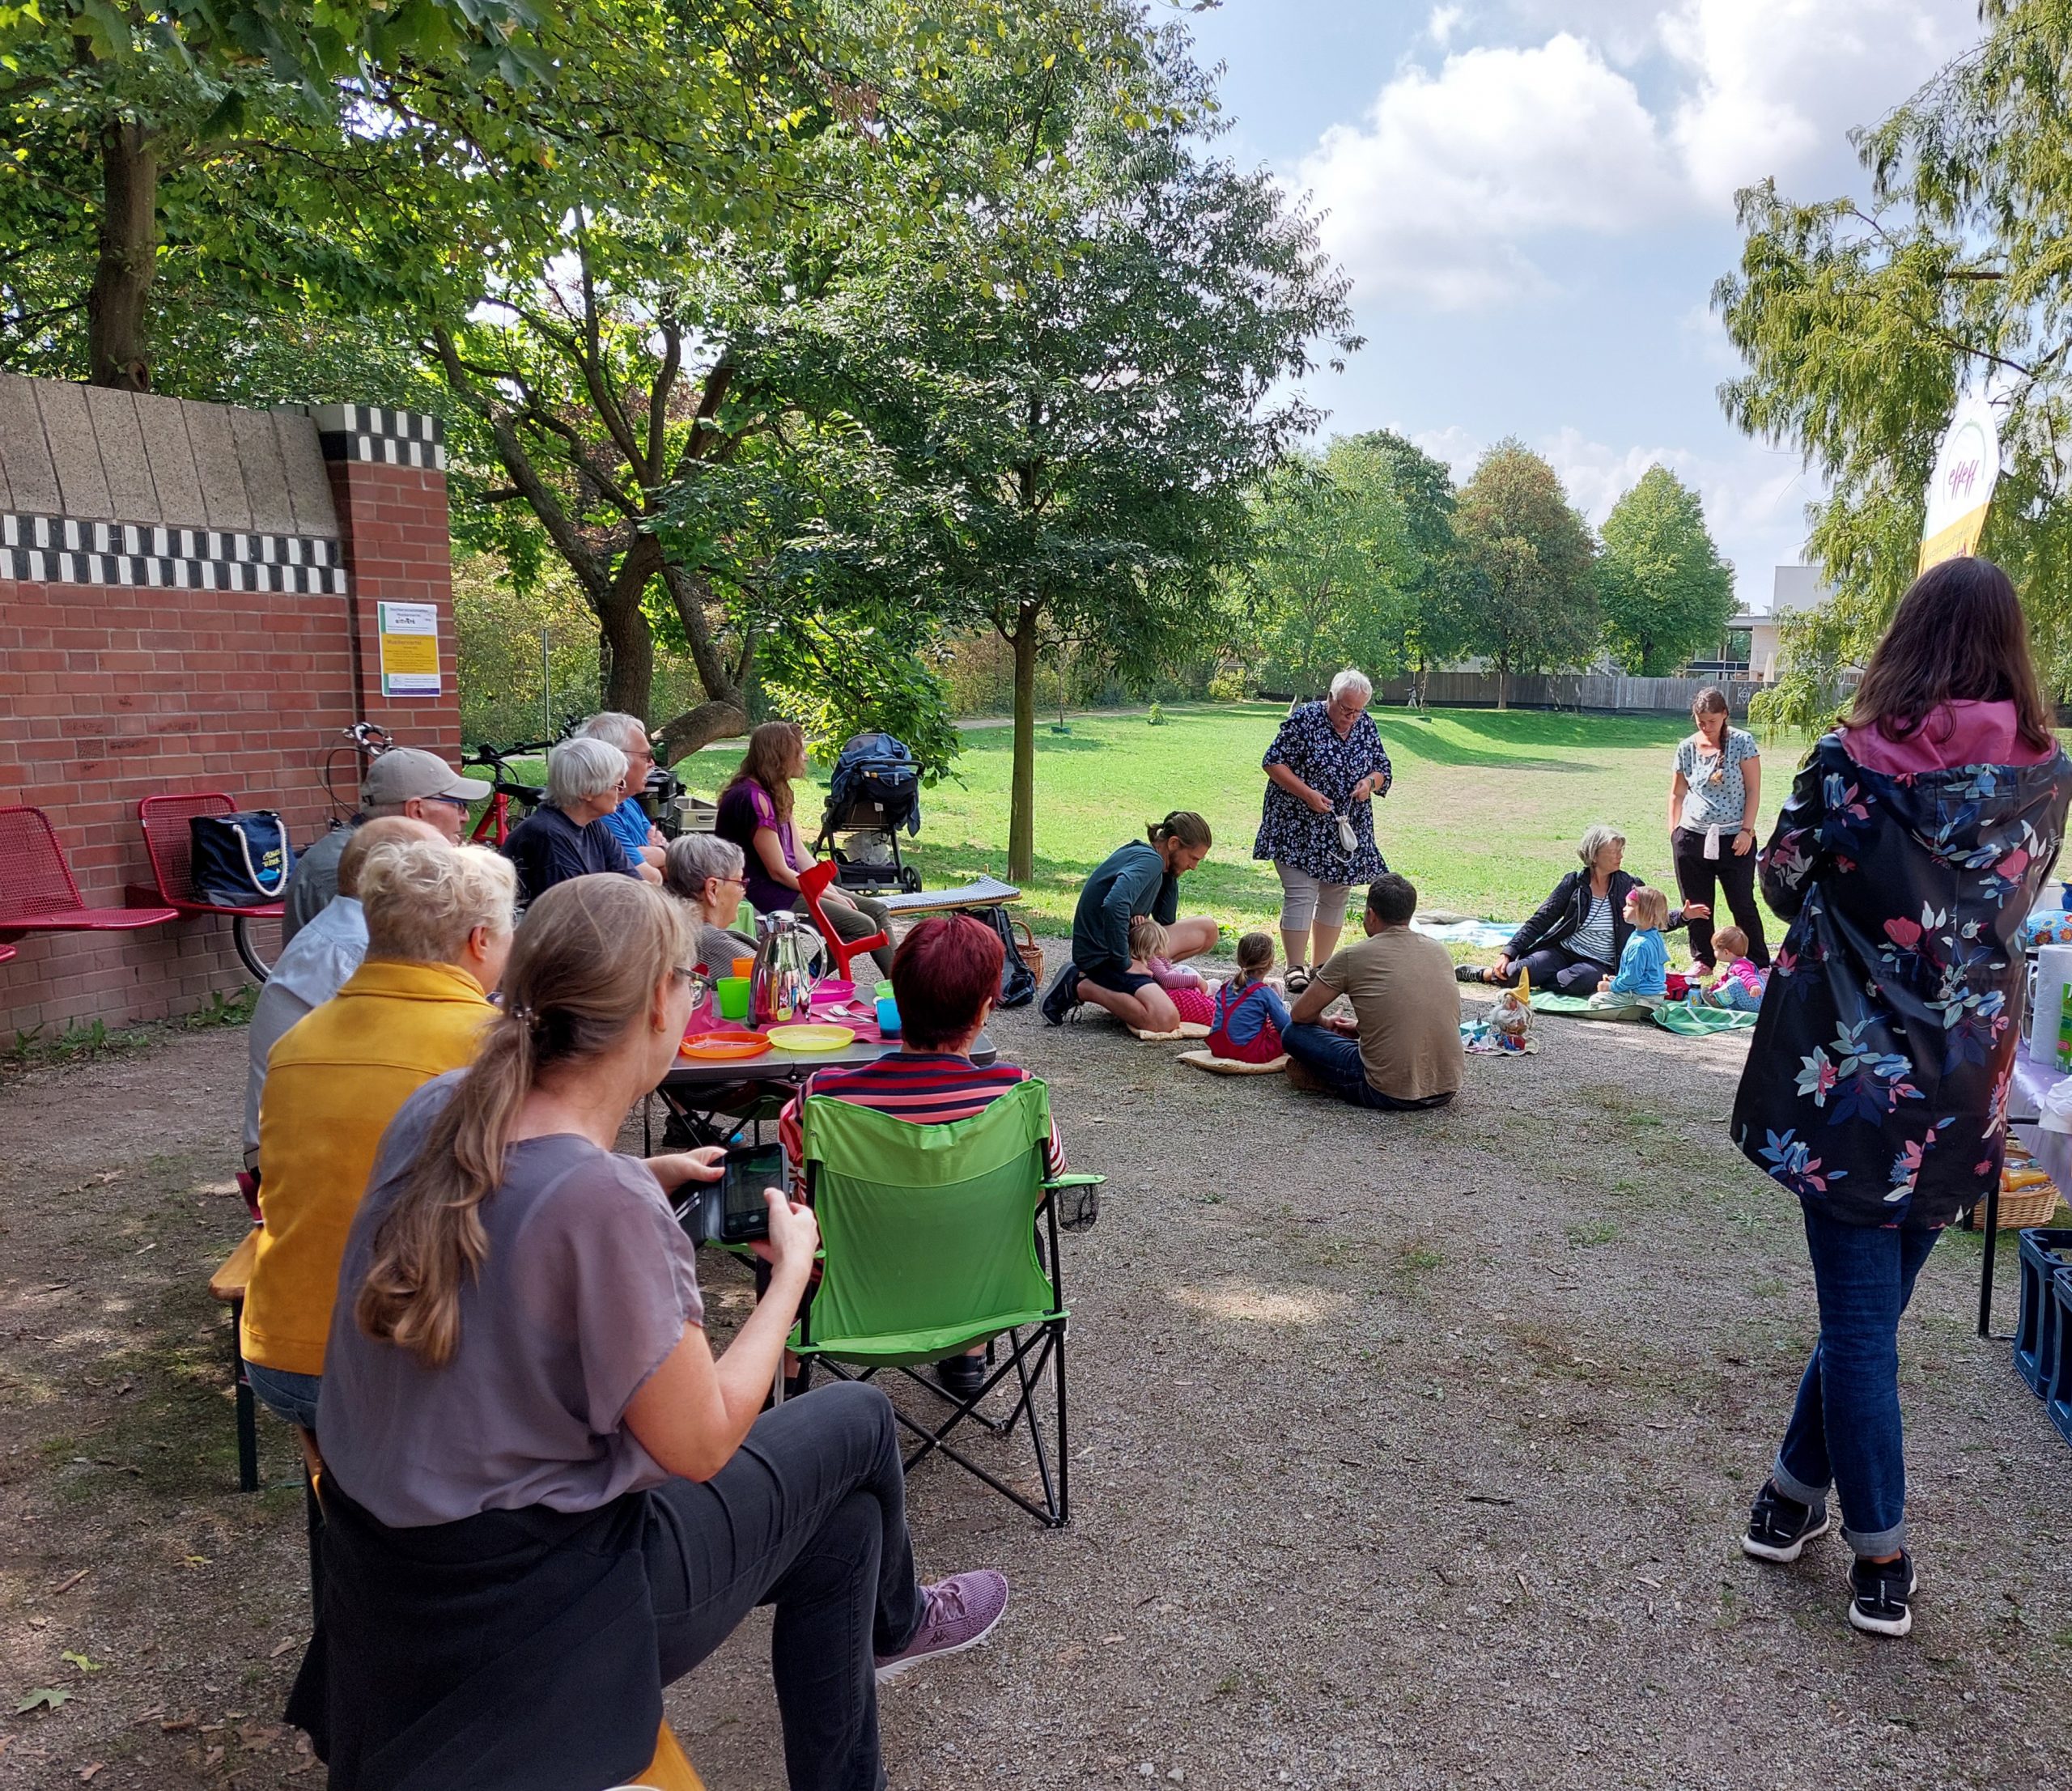 Auf dem Bild ist eine Gruppe von Menschen abgebildet, in deren Mitte eine Märchenerzählerin steht. Die Gruppe trifft sich unter freiem Himmel im Gatschina-Park in Ettlingen.